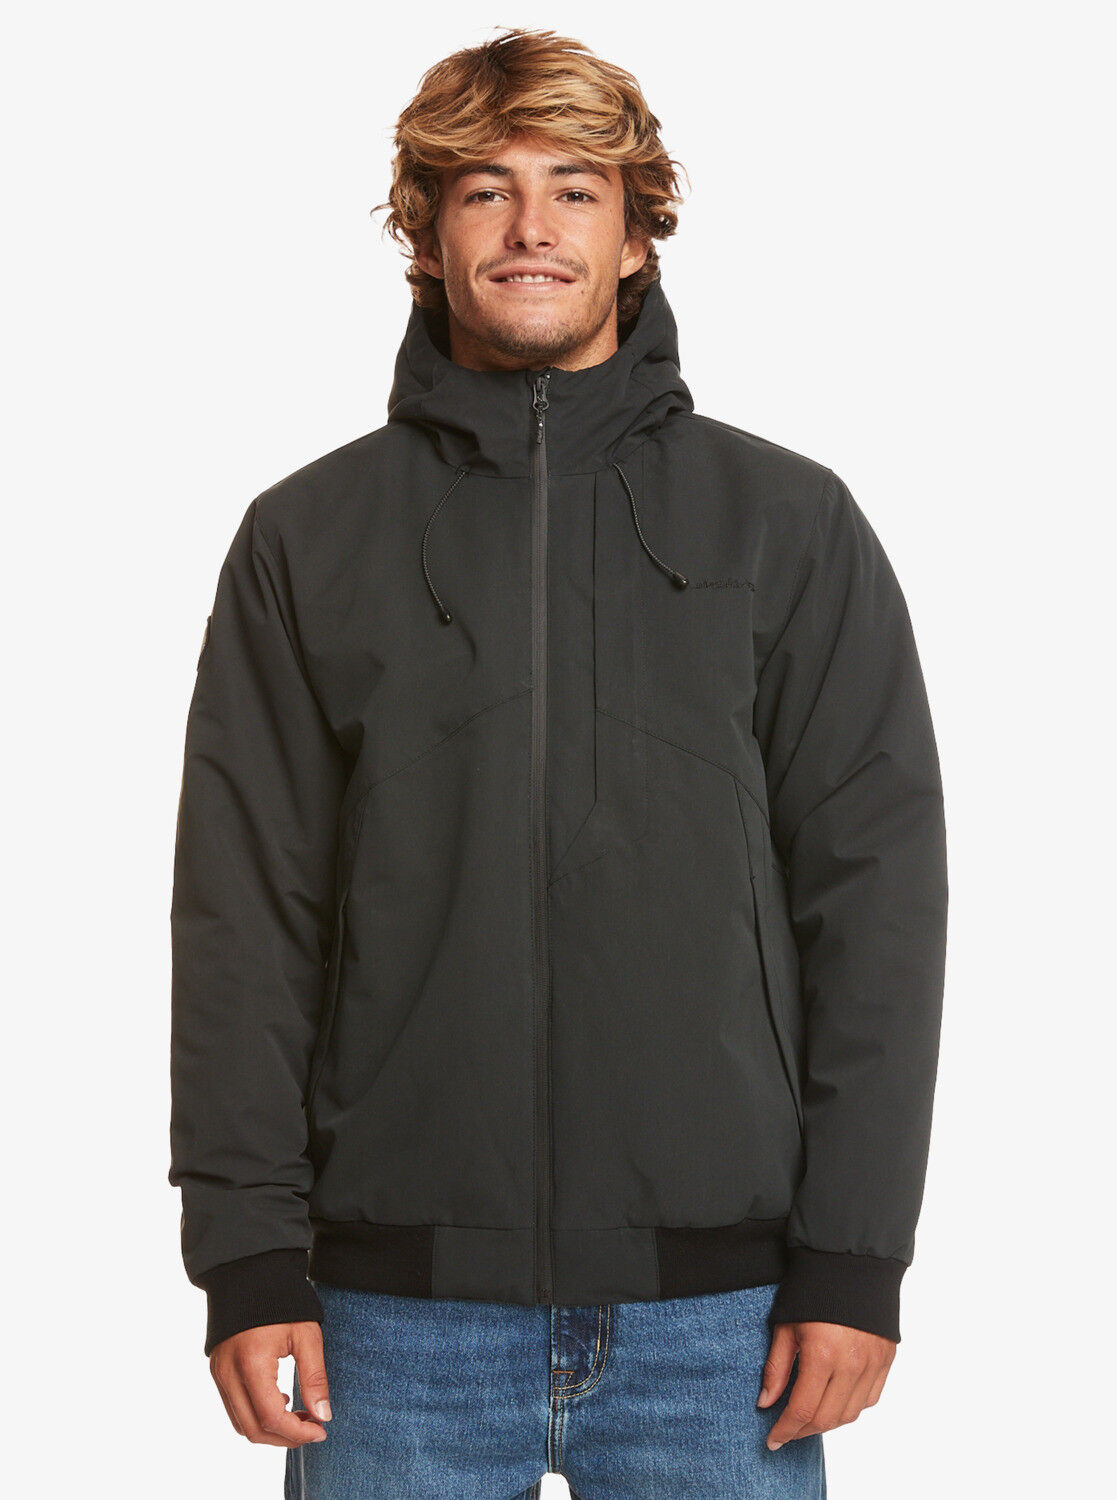 Quiksilver New Brooks 5K Jacket - Waterproof jacket - Men's | Hardloop